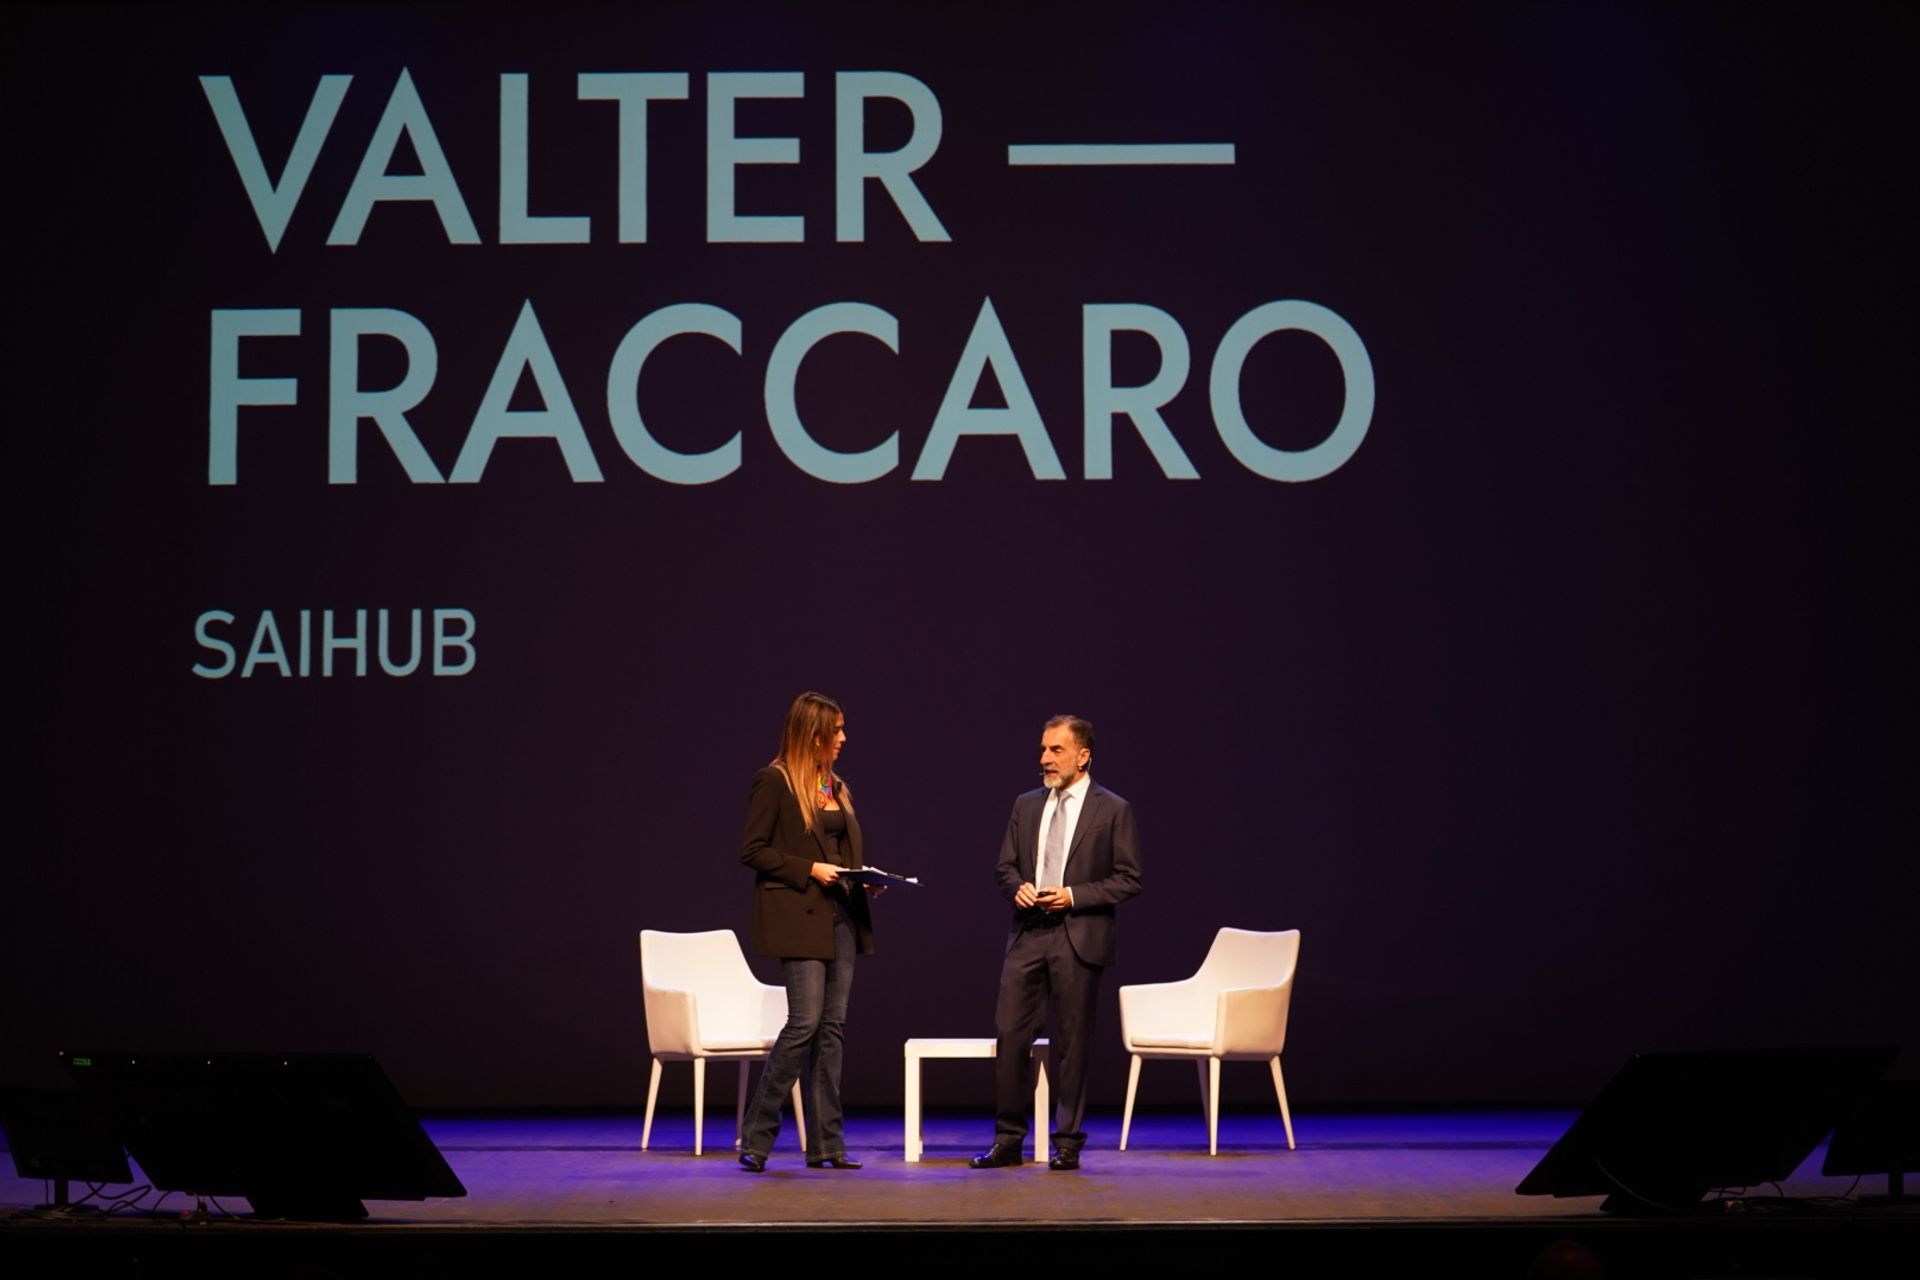 Valter Fraccaro është President i SAIHub, një akronim për Siena Artificial Intelligence Hub, një qendër me rëndësi globale në fushën e Shkencave të Jetës.